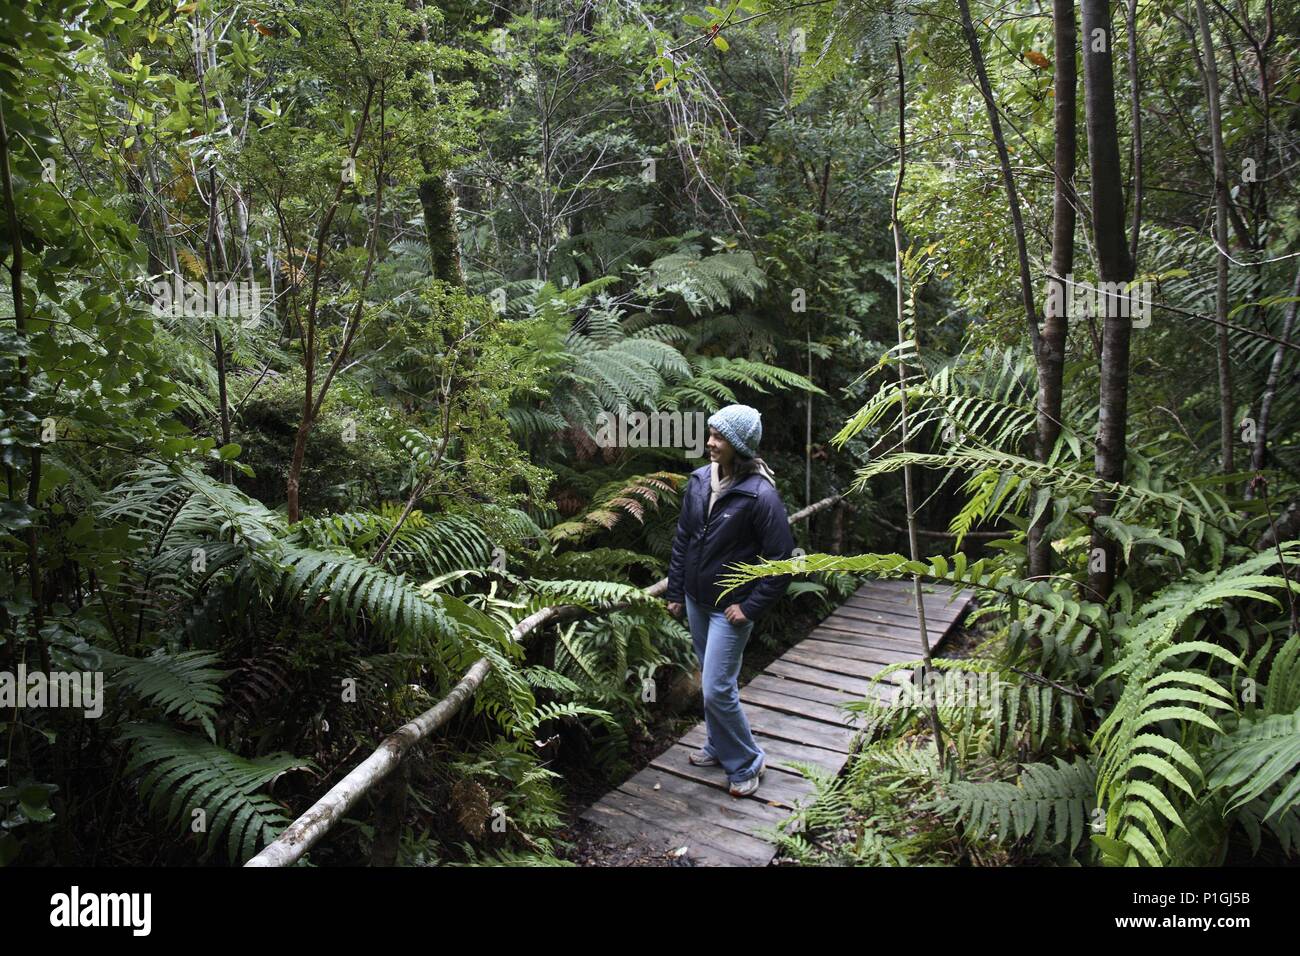 Bosque autóctono en pleno Parque y jóven visitante. Stock Photo